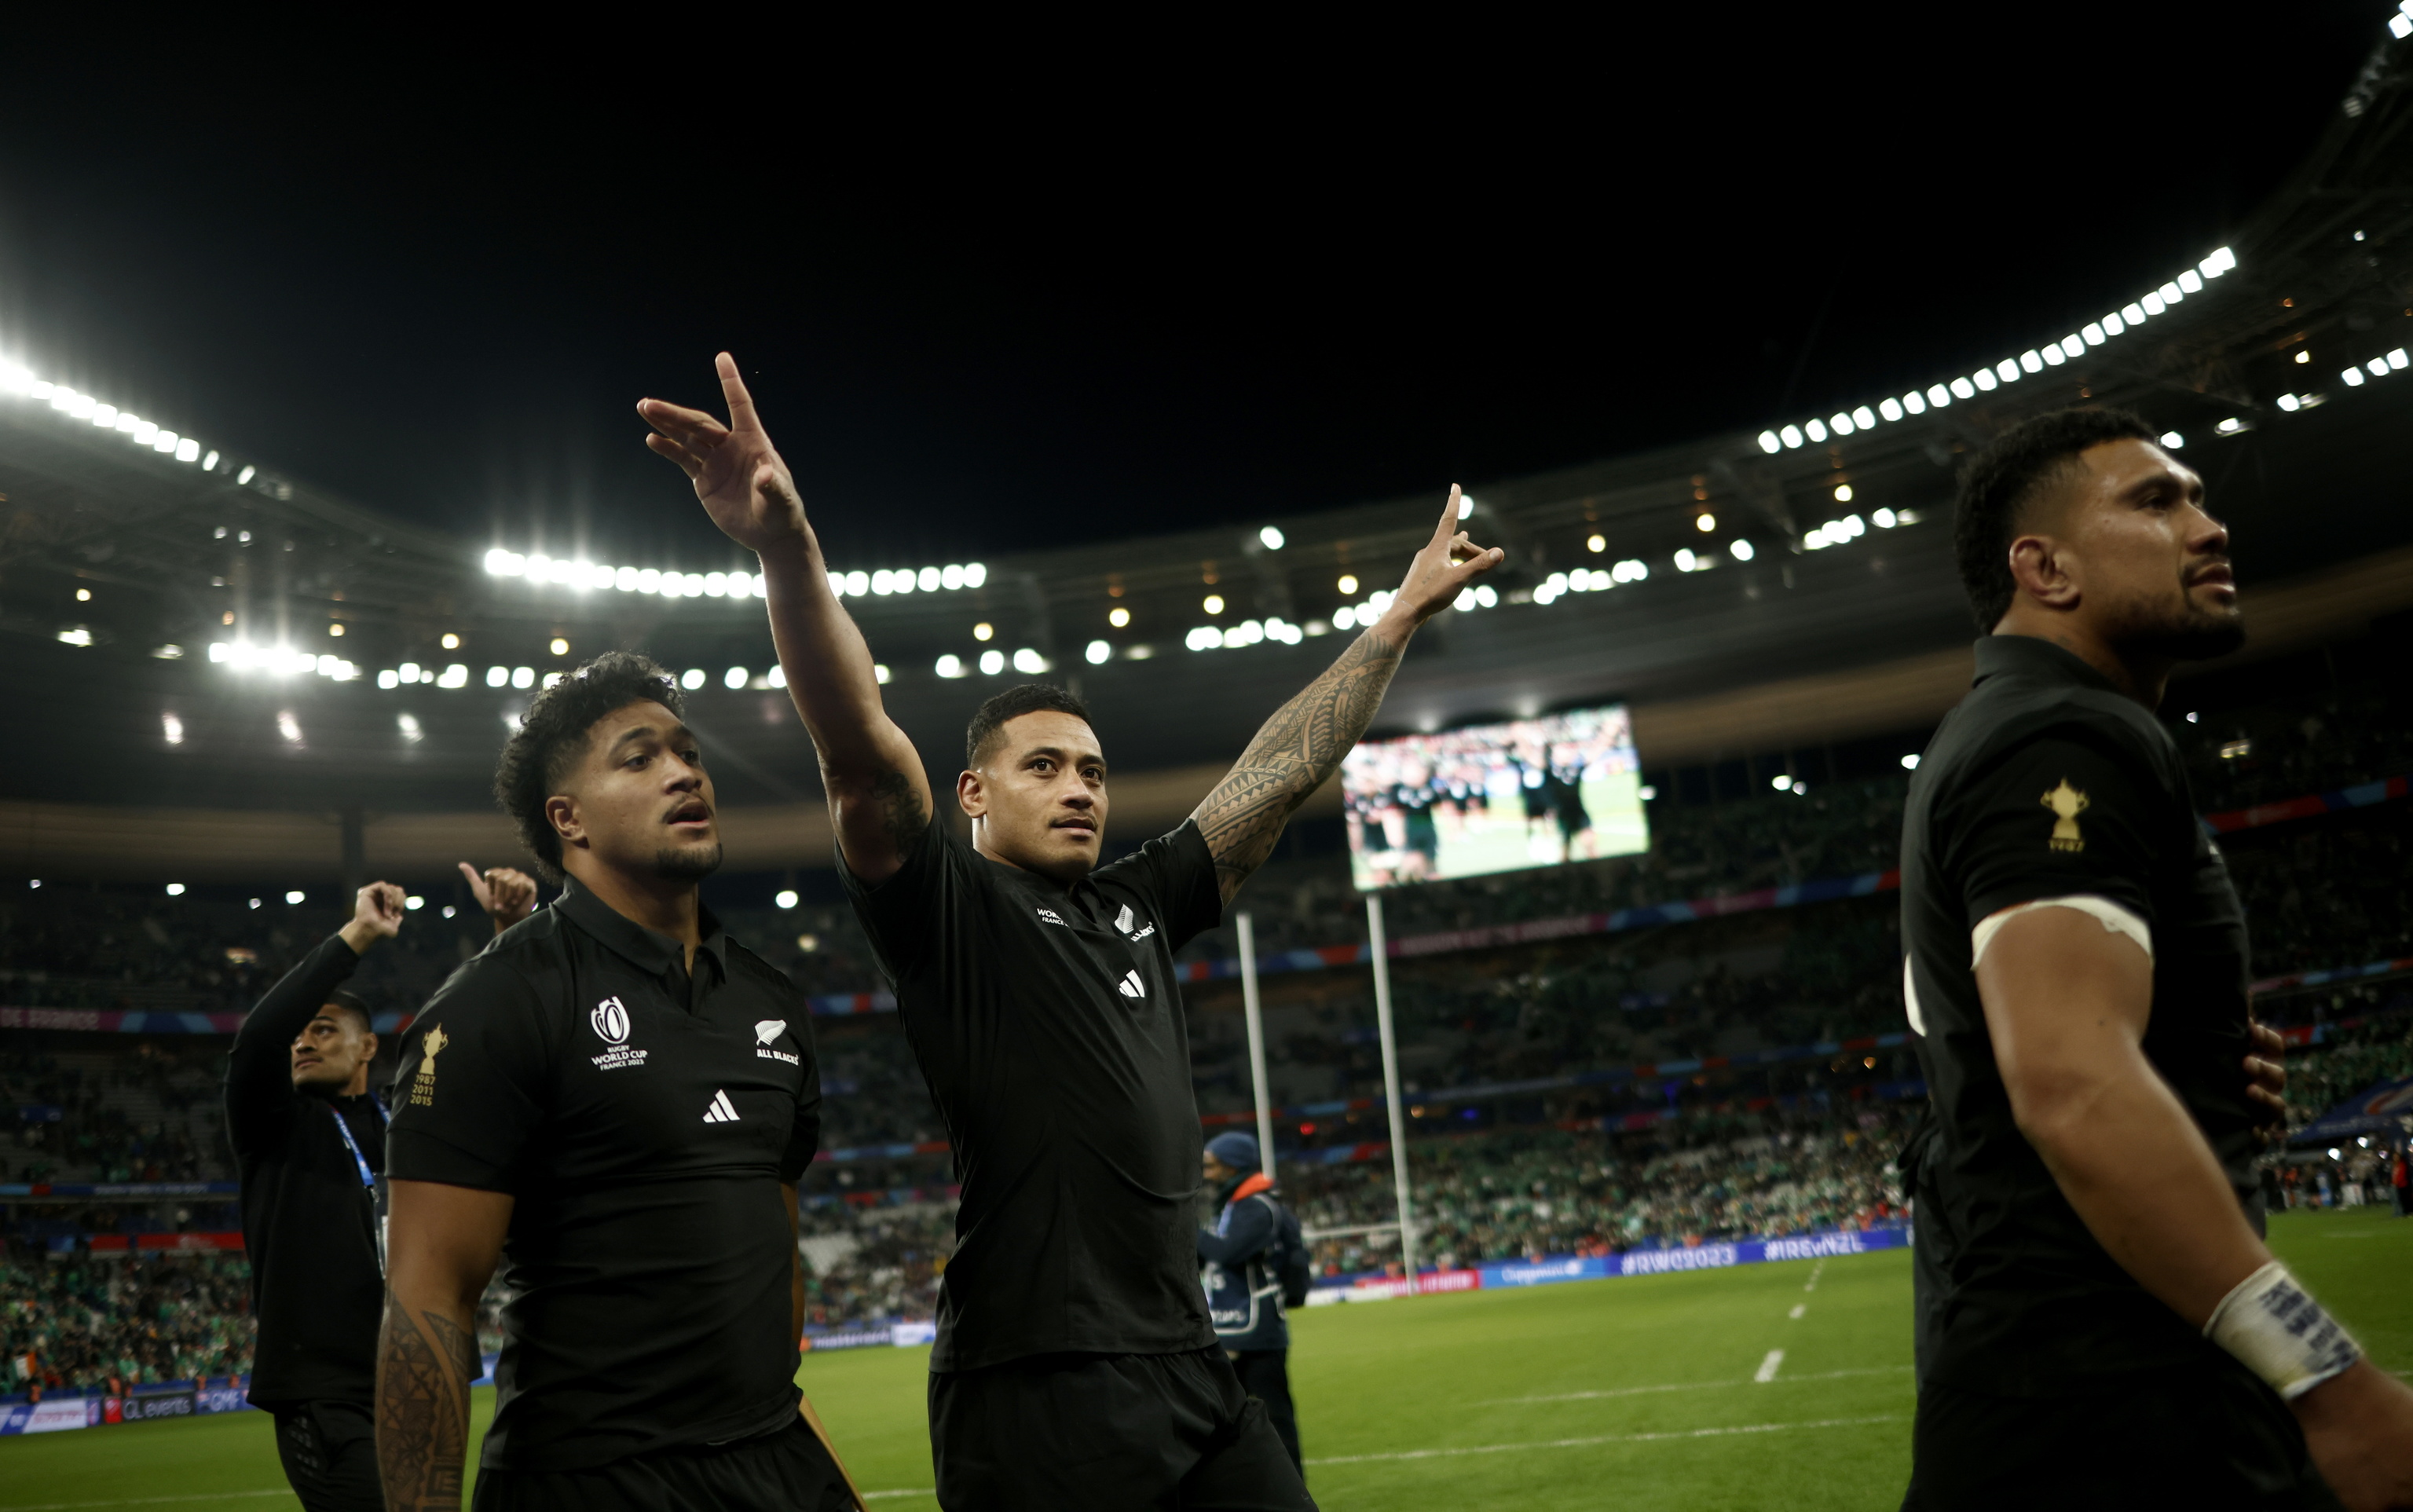 Jugadores del equipo de Nueva Zelanda celebrando su victoria frente a Irlanda.